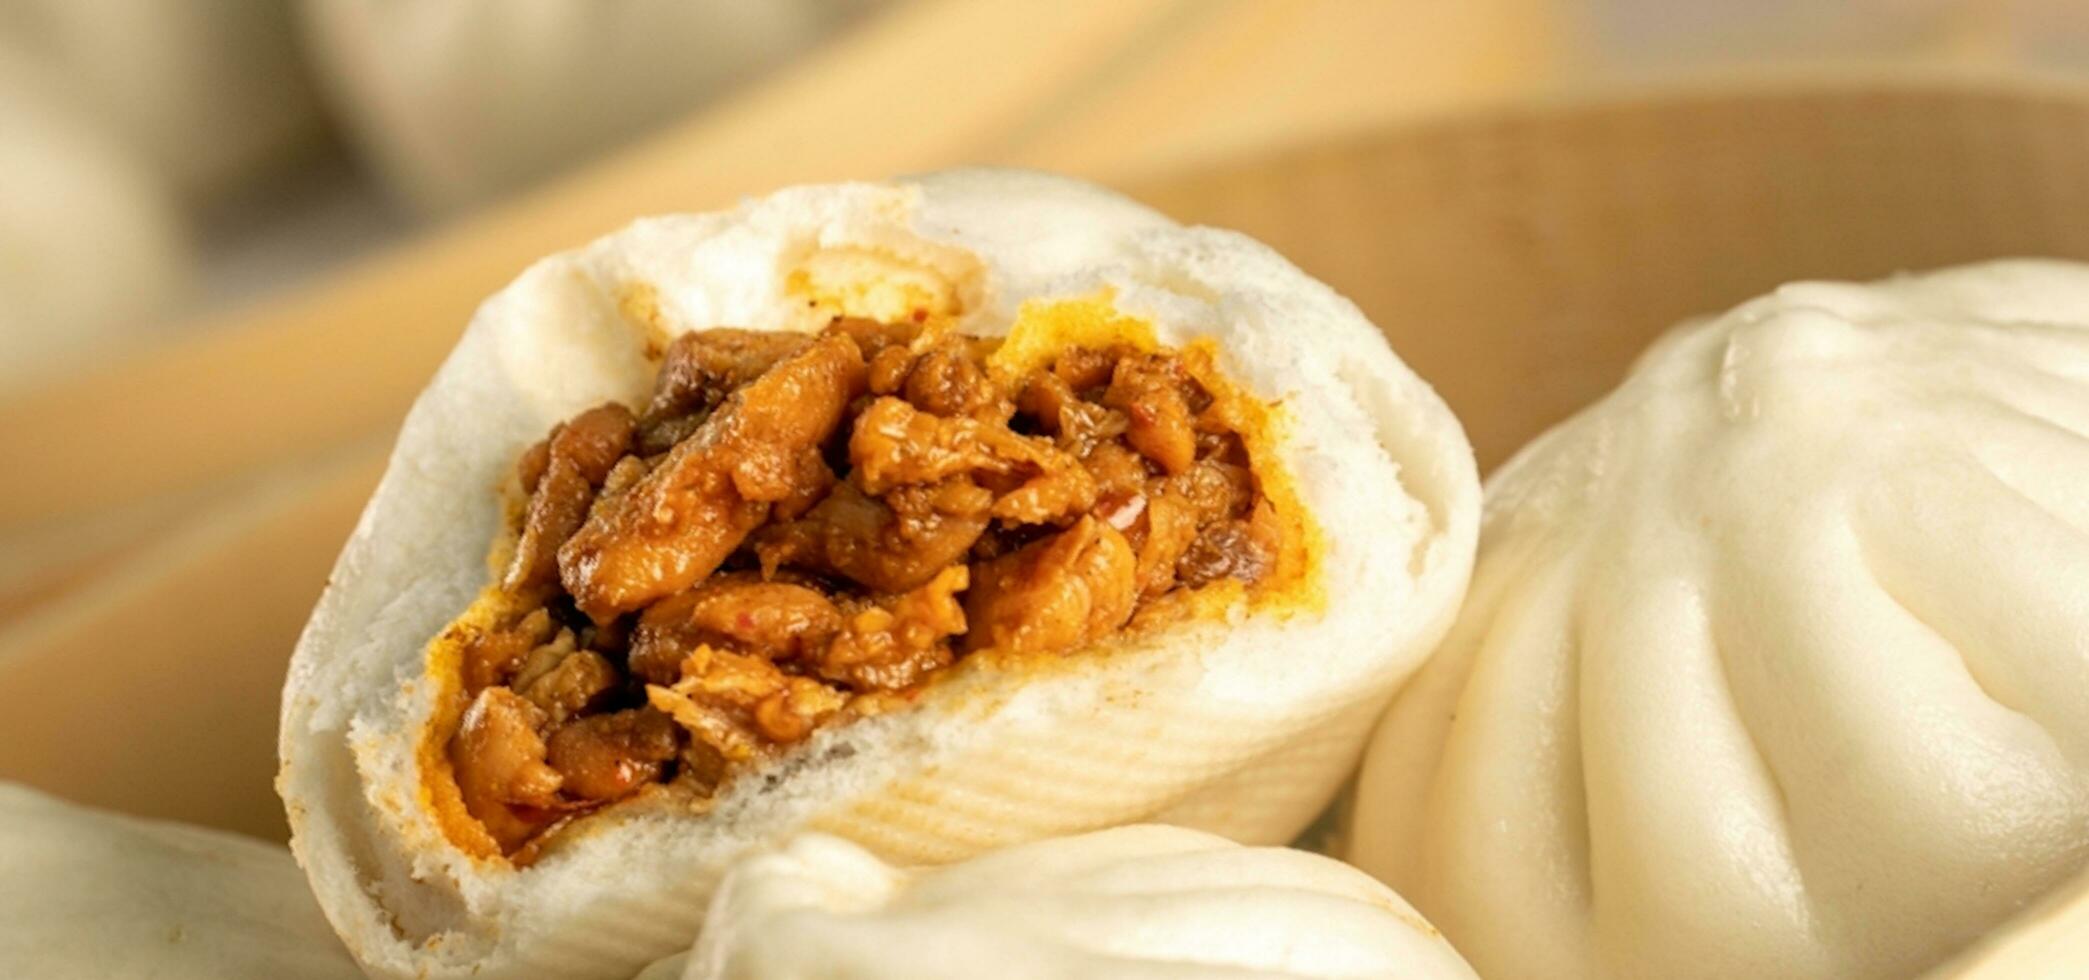 Chinesisch Essen, baozi ist ein traditionell Delikatesse im China, Brot Essen Fotografie damit verlockend, köstlich baozi, Chinesisch gedämpft Fleisch Brötchen ist bereit zu Essen auf Portion Teller und Dampfer foto